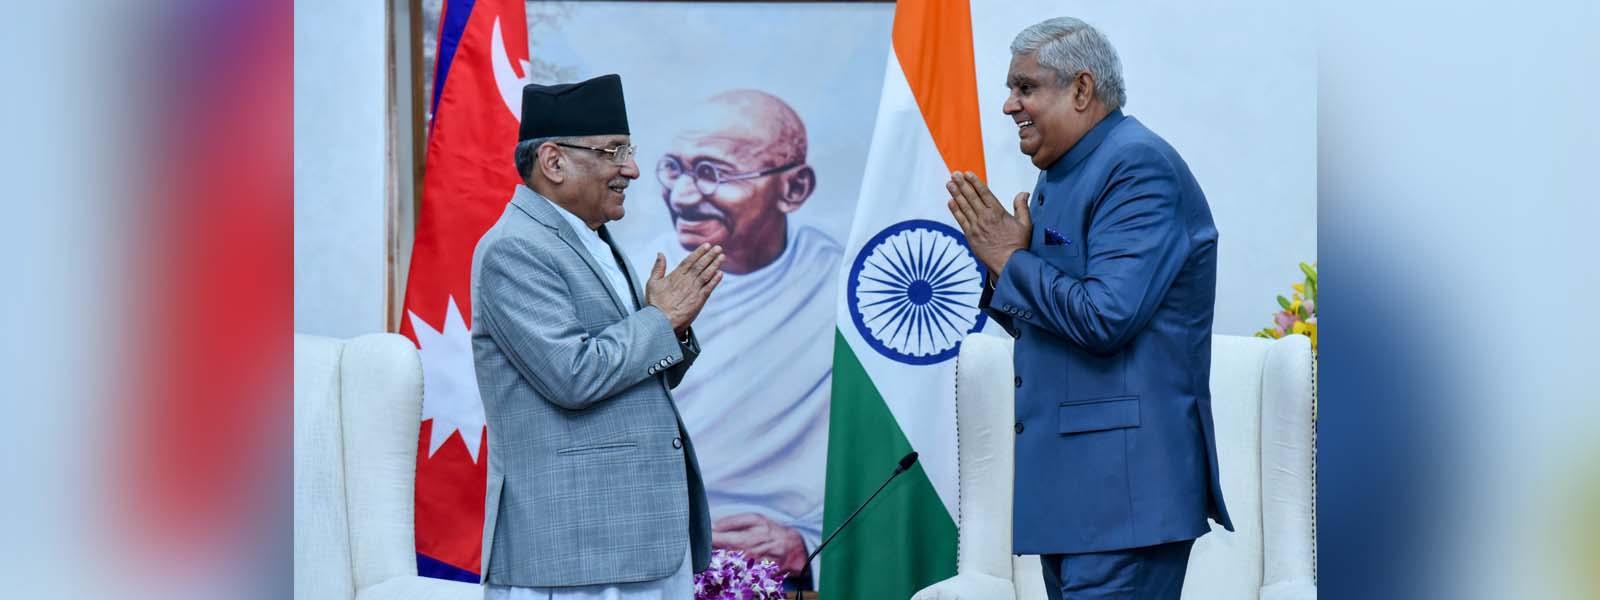 Vice President, Shri Jagdeep Dhankhar met Prime Minister of Nepal, H.E. Mr. Pushpa Kamal Dahal ‘Prachanda’ in New Delhi